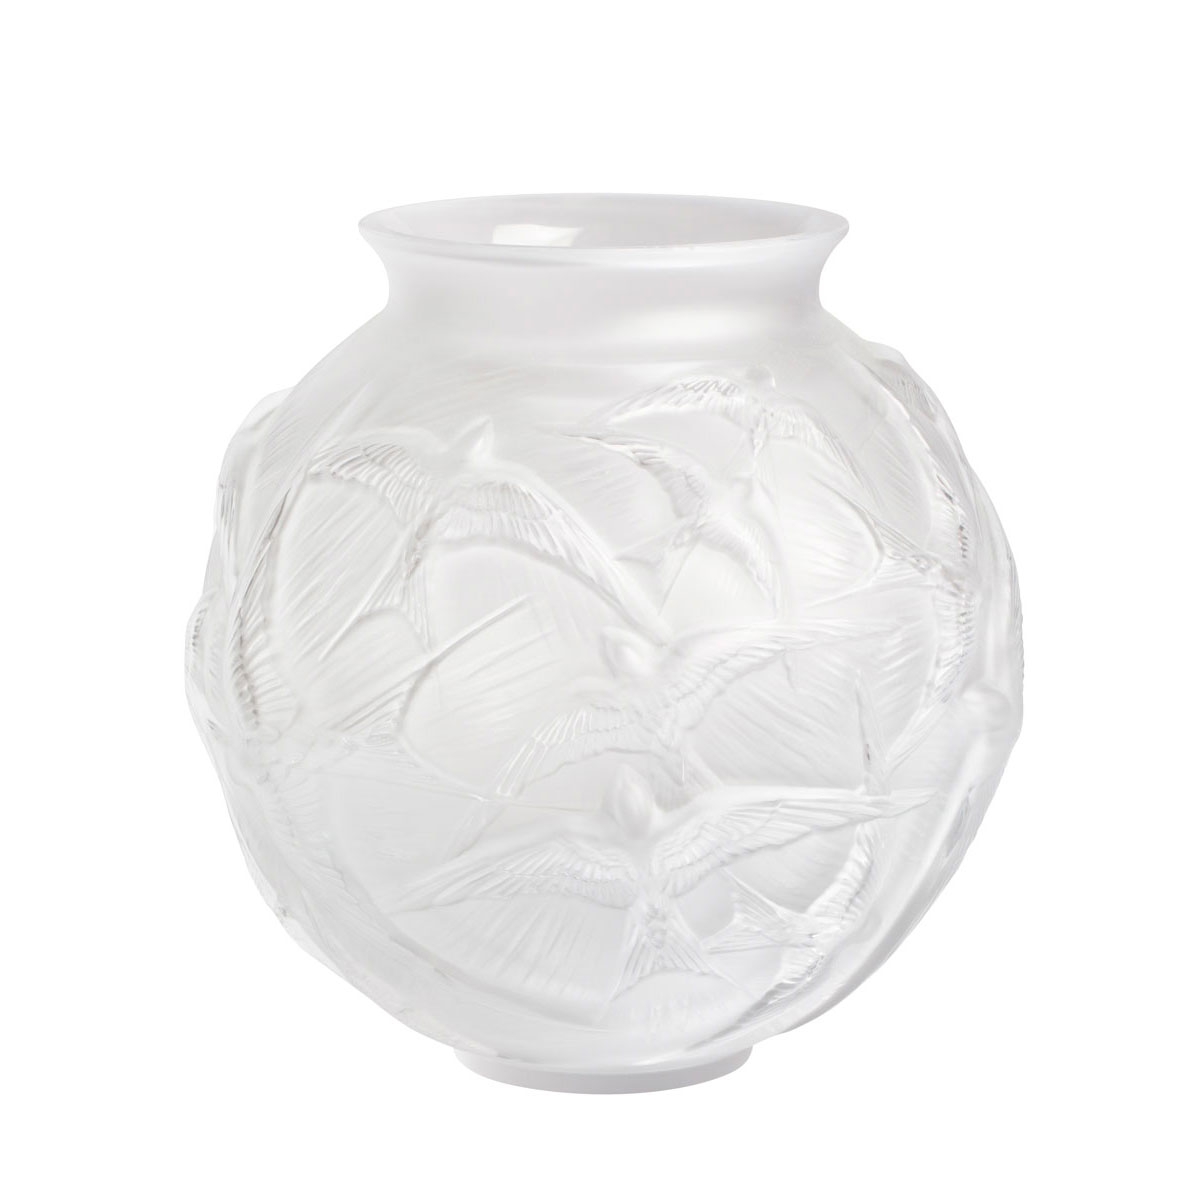 Lalique Hirondelles 8.5" Round Vase, Clear